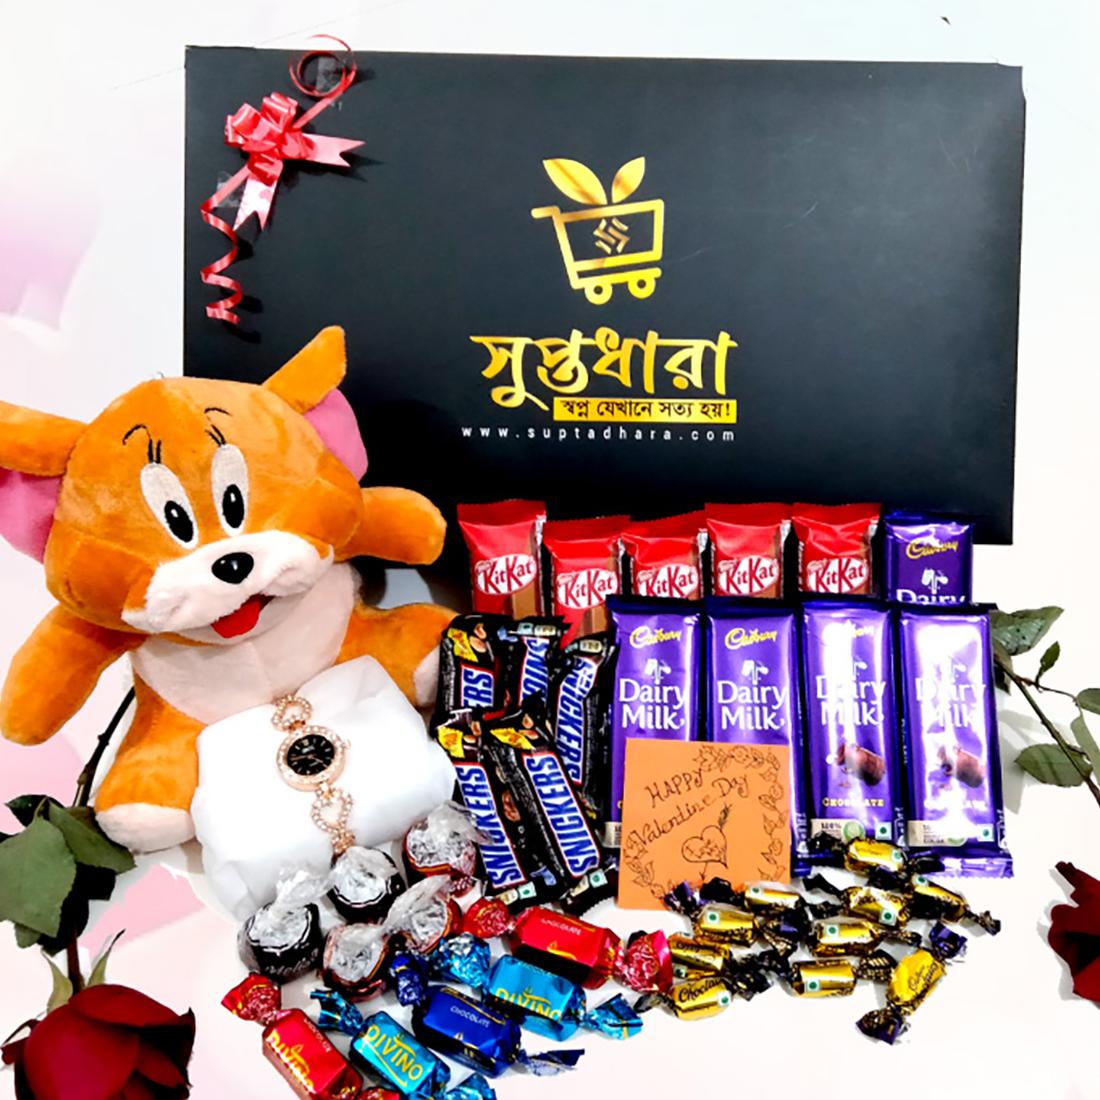 Premium-Chocolate-Special-Package-1226-jpg-suptadhara-product-1711742190.jpg